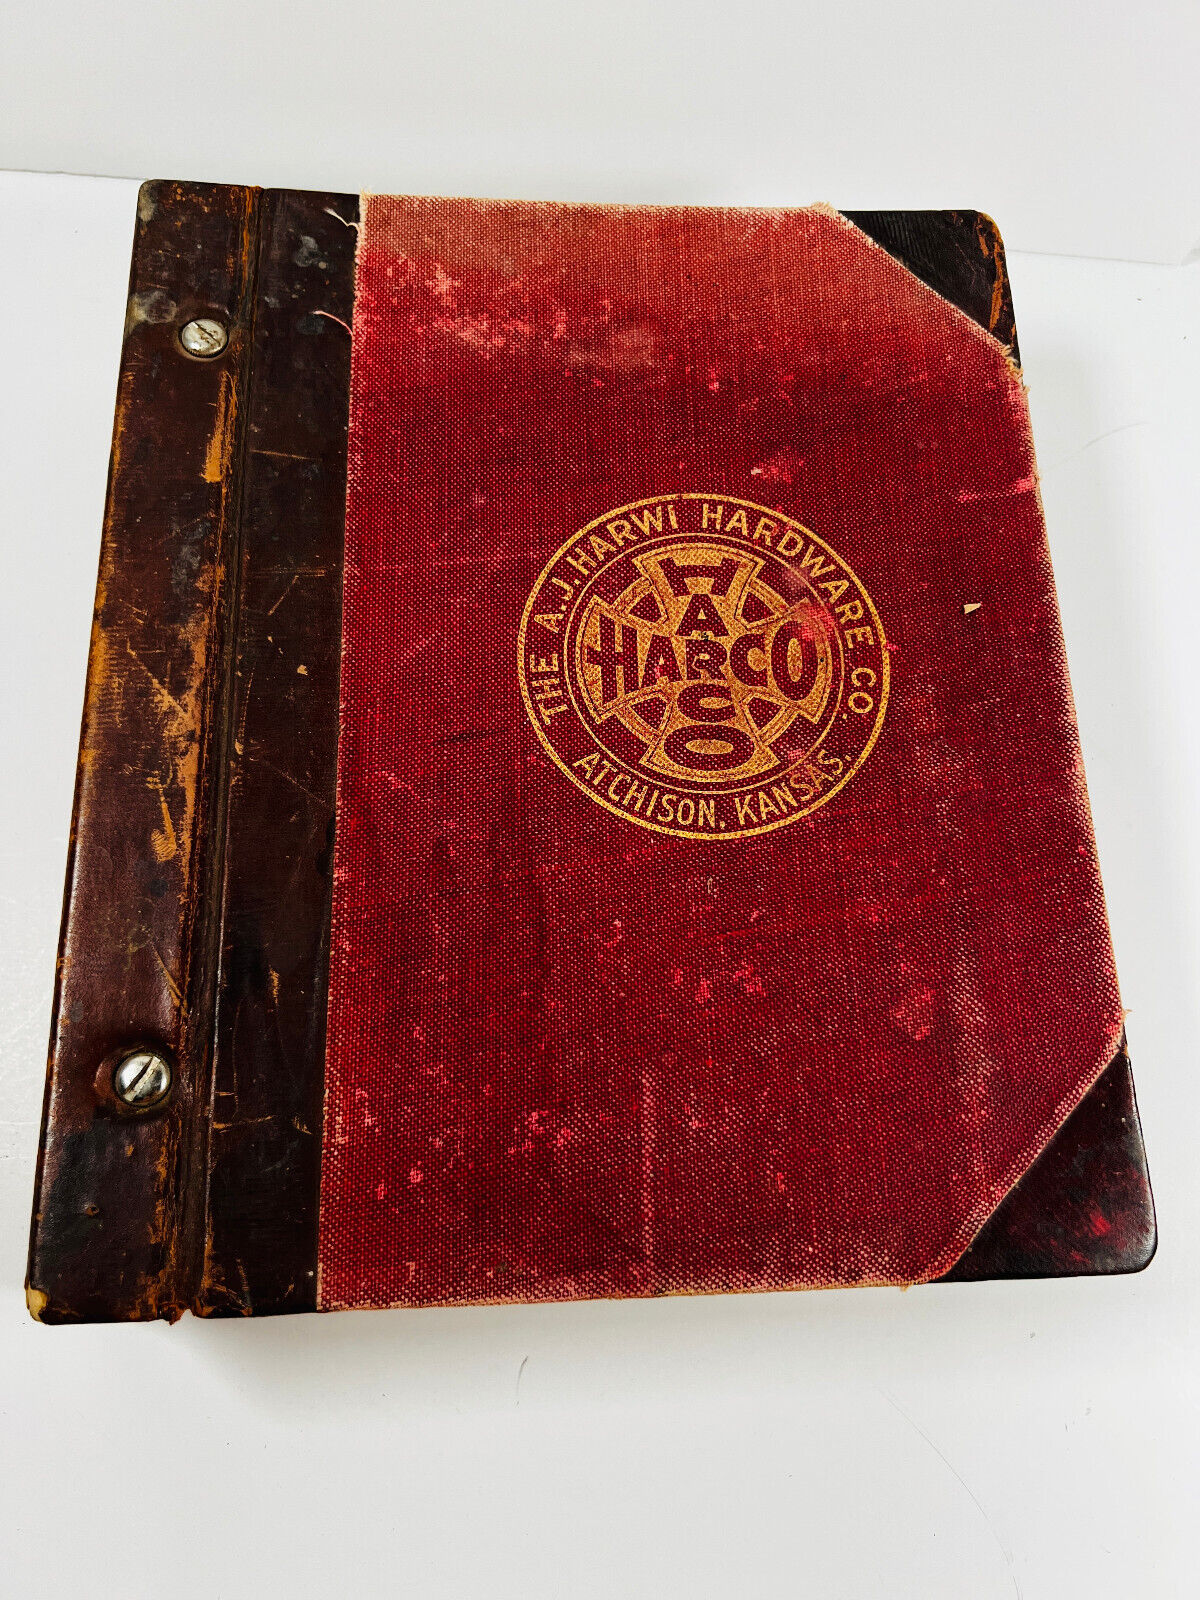 Amazing 1800's AJ Harwi Harco Hardware Housewares Catalog Atchison KS